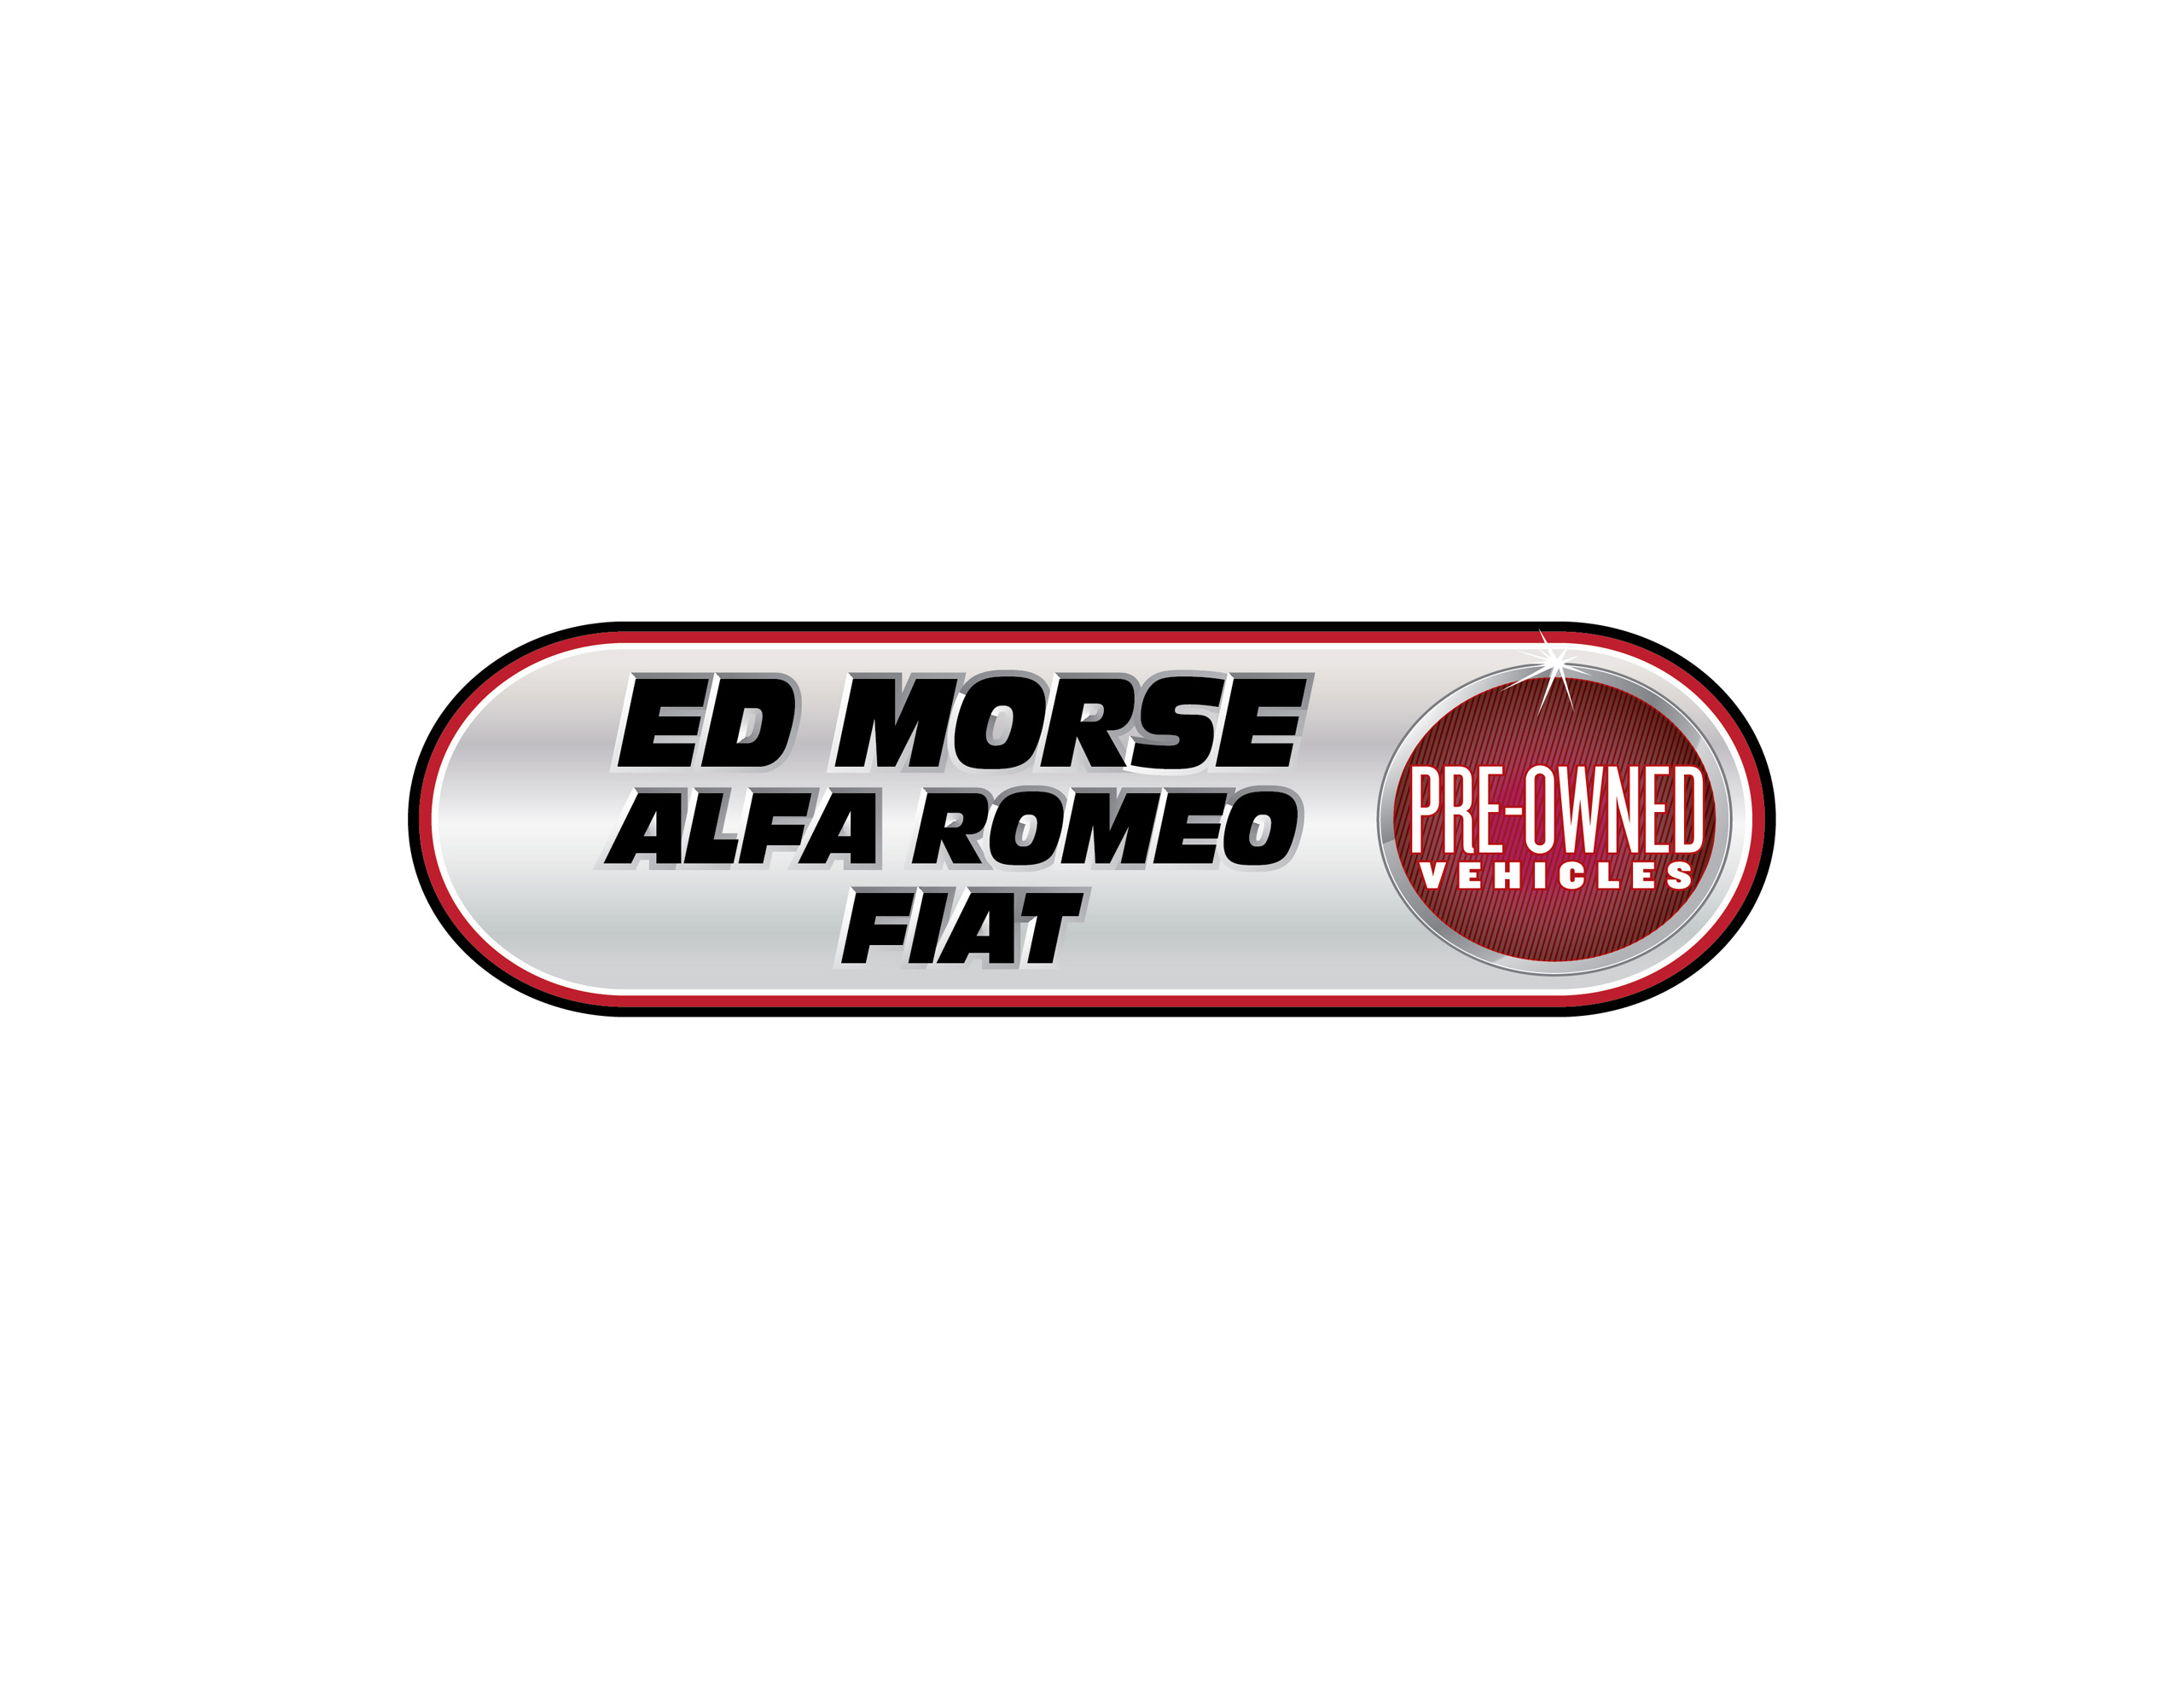 Ed Morse Alfa Romeo FIAT logo